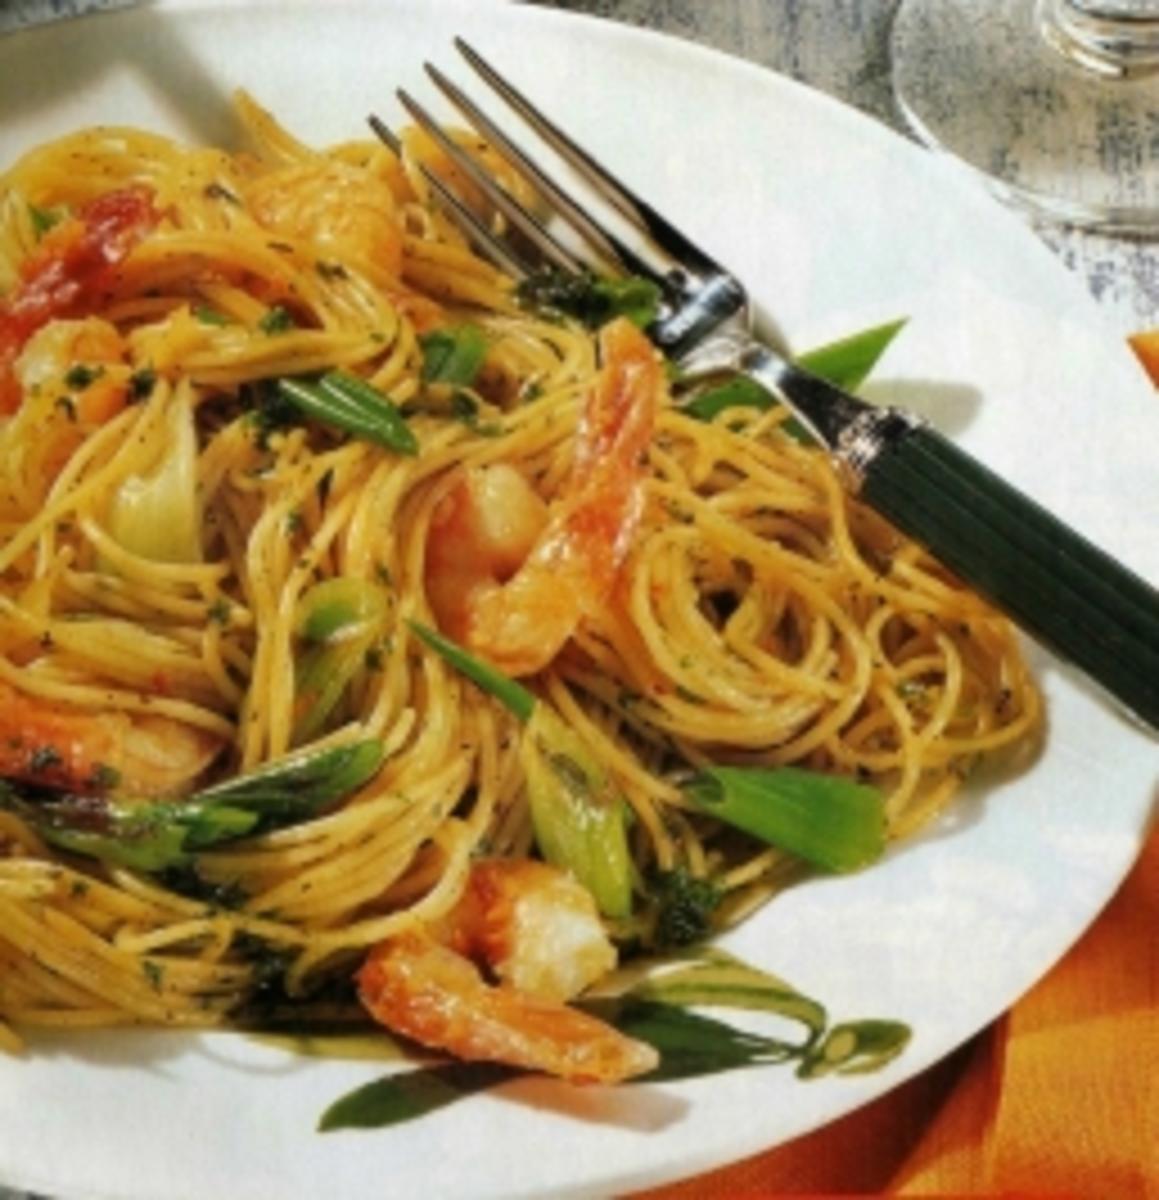 Feurige Spaghetti mit Garnelen - Rezept